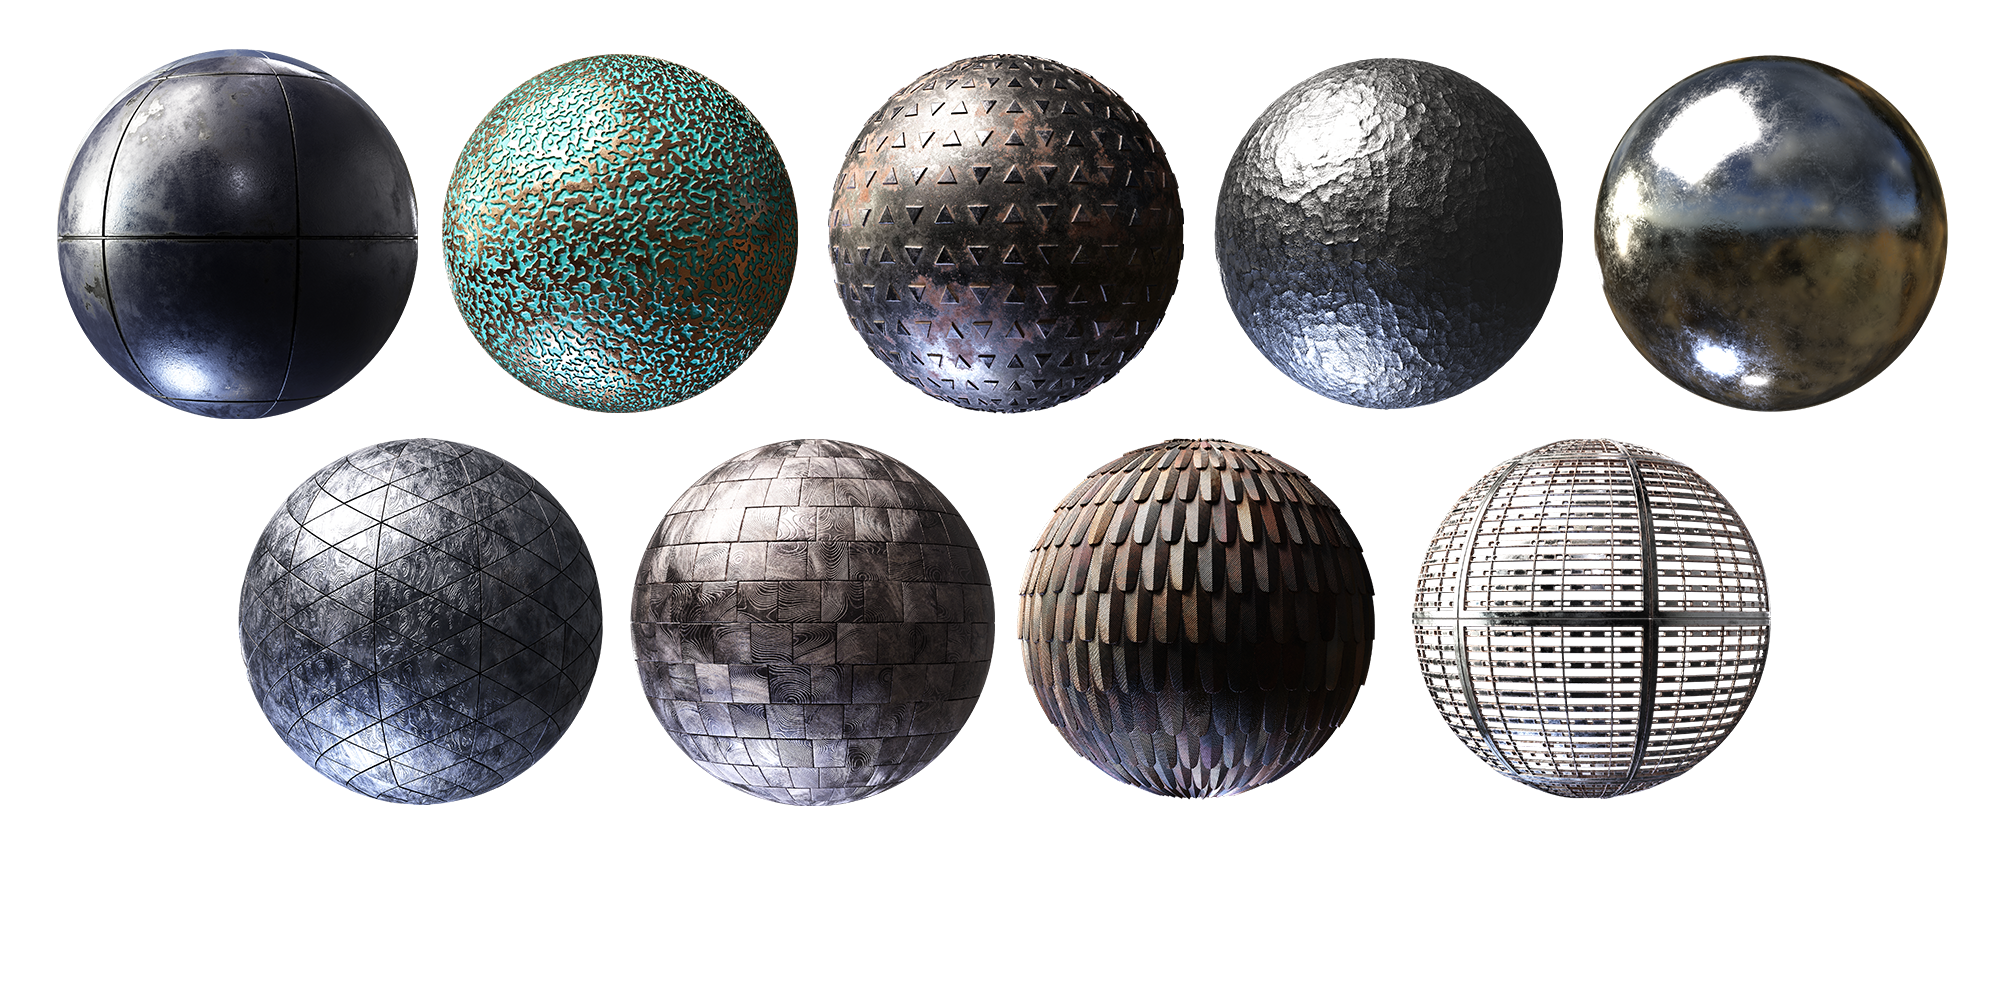 Texture Pack: Metal 01